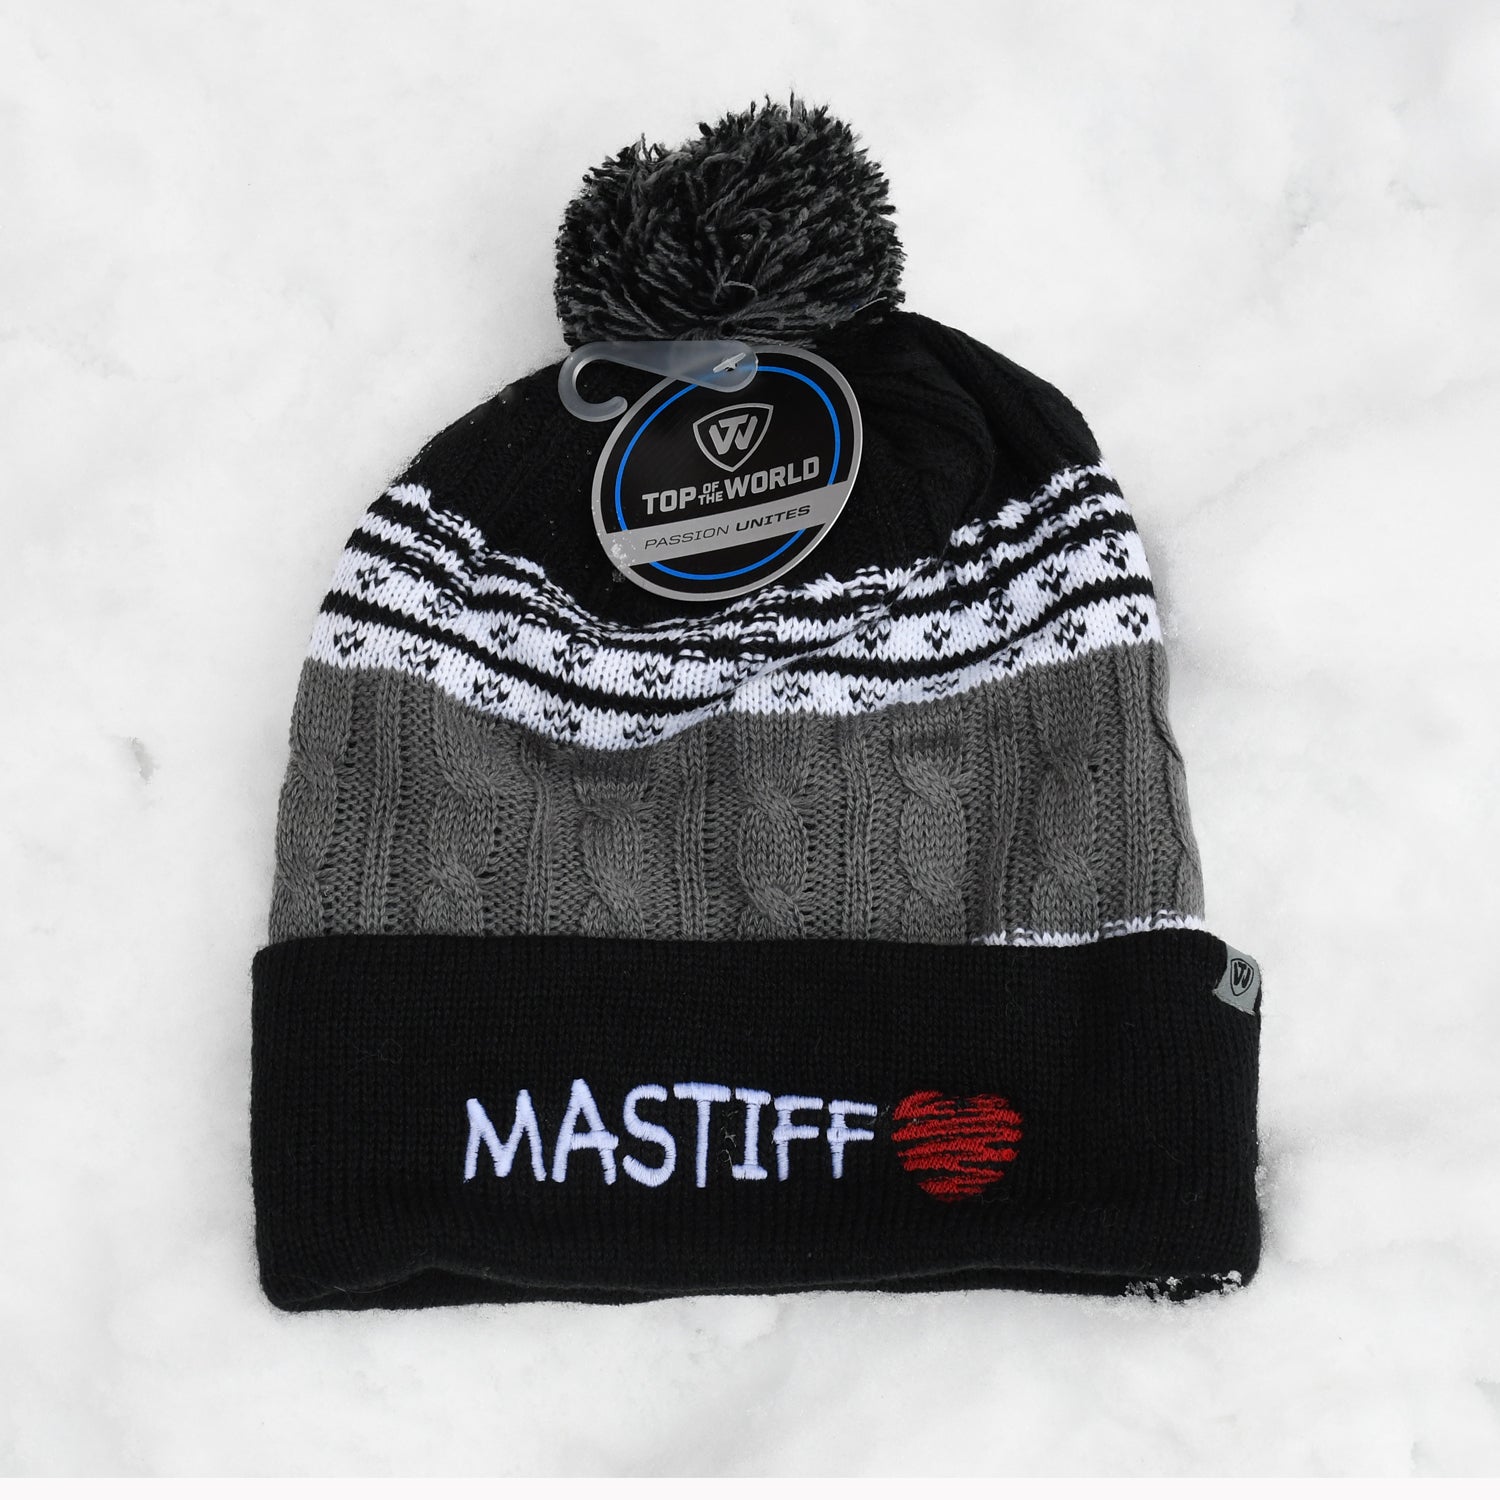 Mastiff knit hat, black